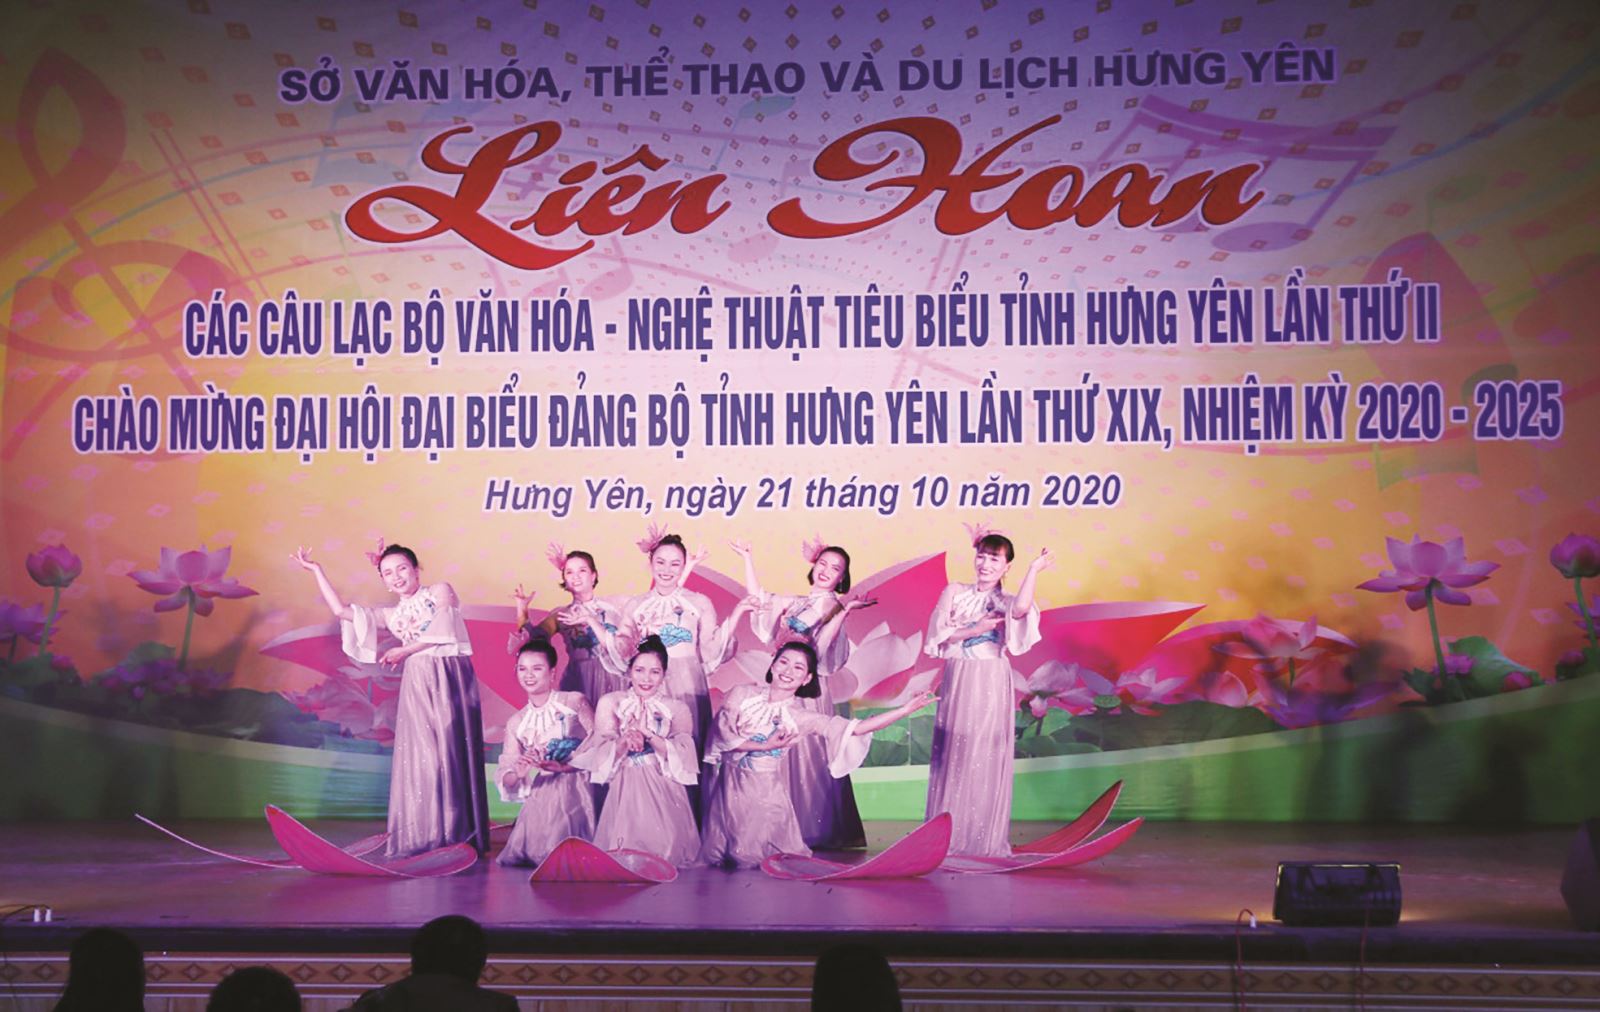 Hưng Yên: Liên hoan các Câu lạc bộ Văn hóa- Nghệ thuật lần thứ II, năm 2020